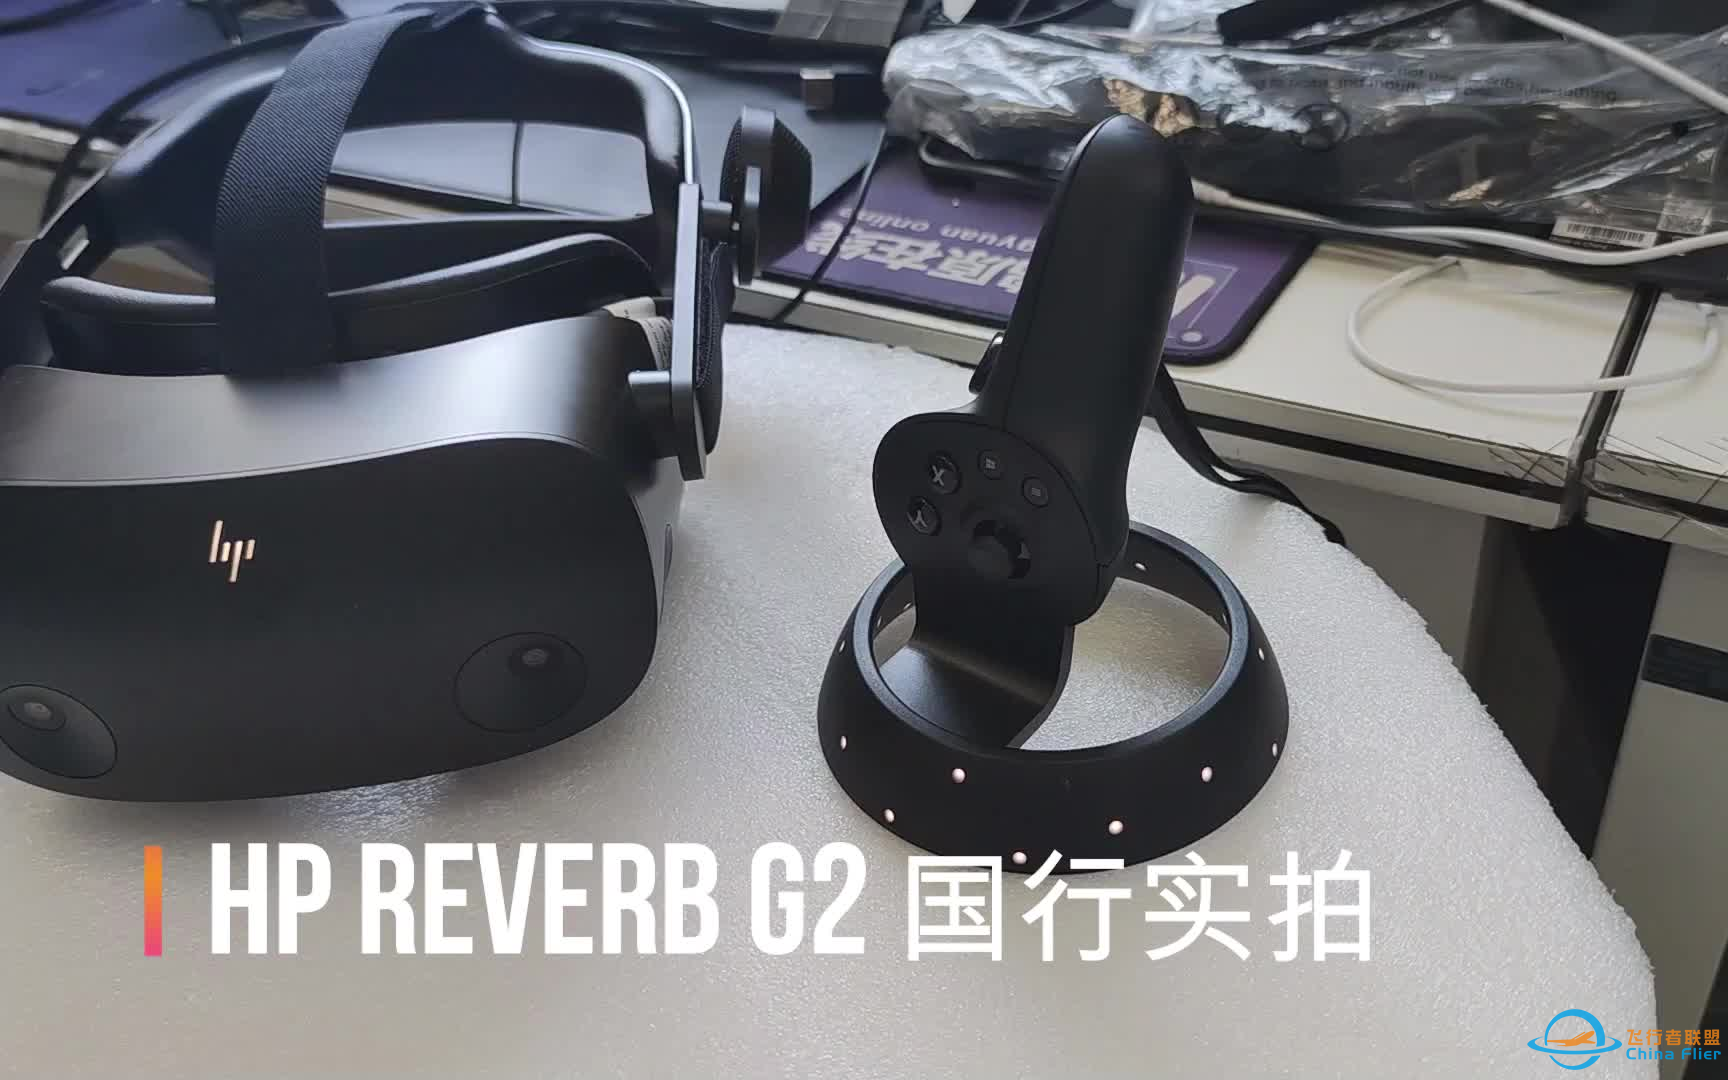 惠普HP REVERB G2 VR MR 虚拟现实设备 飞行模拟 DCS 艾利克斯游戏实测  国行真机展示 小姐姐佩戴展示 鸿源在线带你玩转惠普最前沿科技产品-5715 